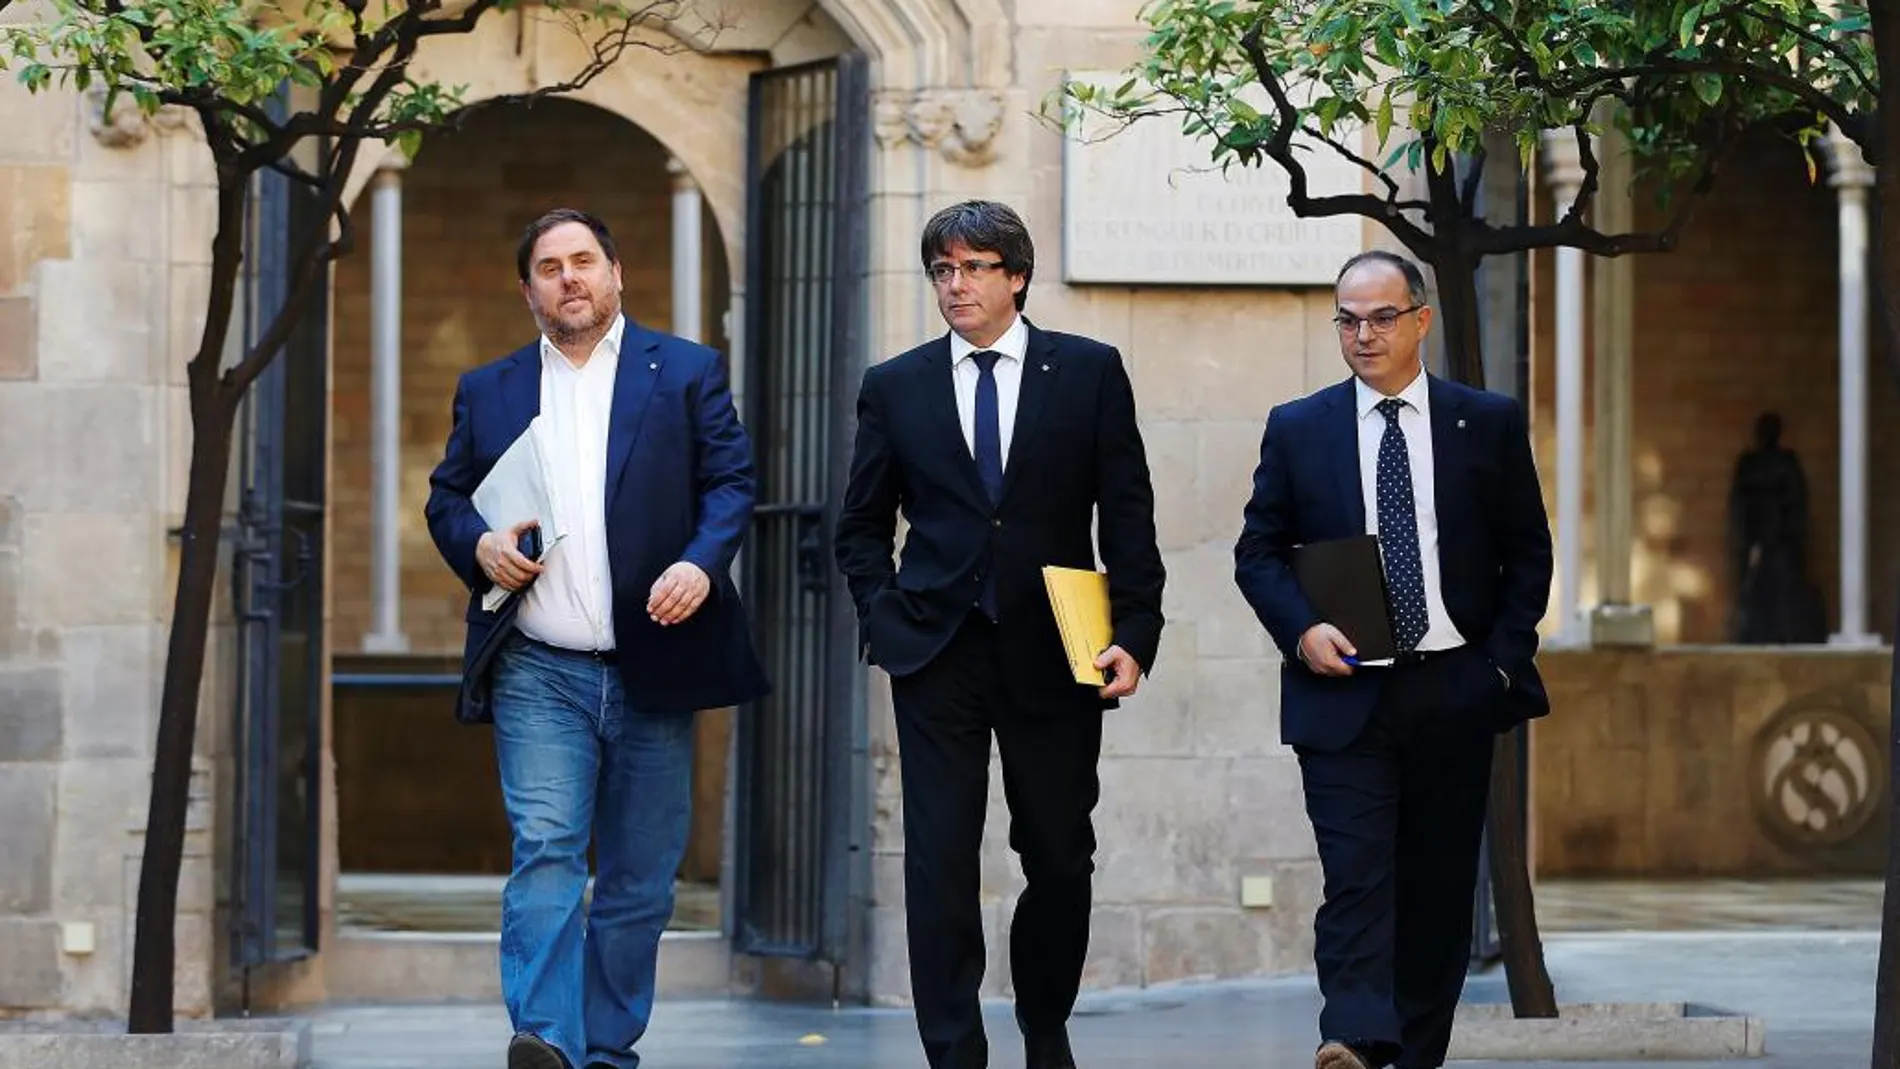 El presidente de la Generalitat, Carles Puigdemont (c), su vicepresidente, Oriol Junqueras (i), y el conseller de Presidencia, Jordi Turull (d), a su llegada a la reunión semanal del gobierno catalán